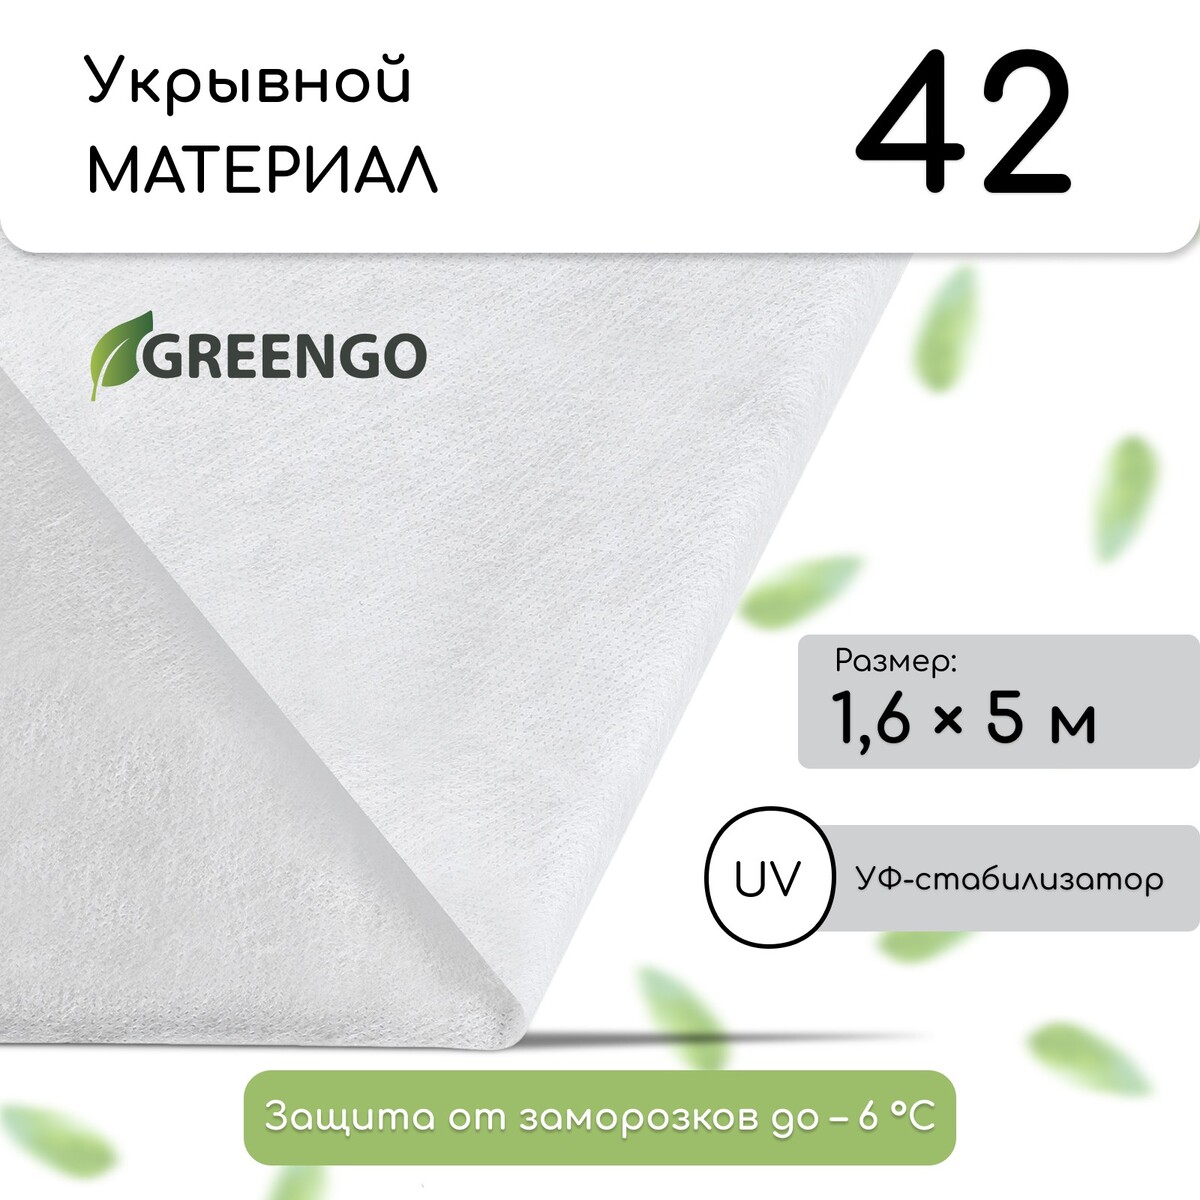 Материал укрывной, 5 × 1.6 м, плотность 42 г/м², спанбонд с уф-стабилизатором, белый, greengo, эконом 20%